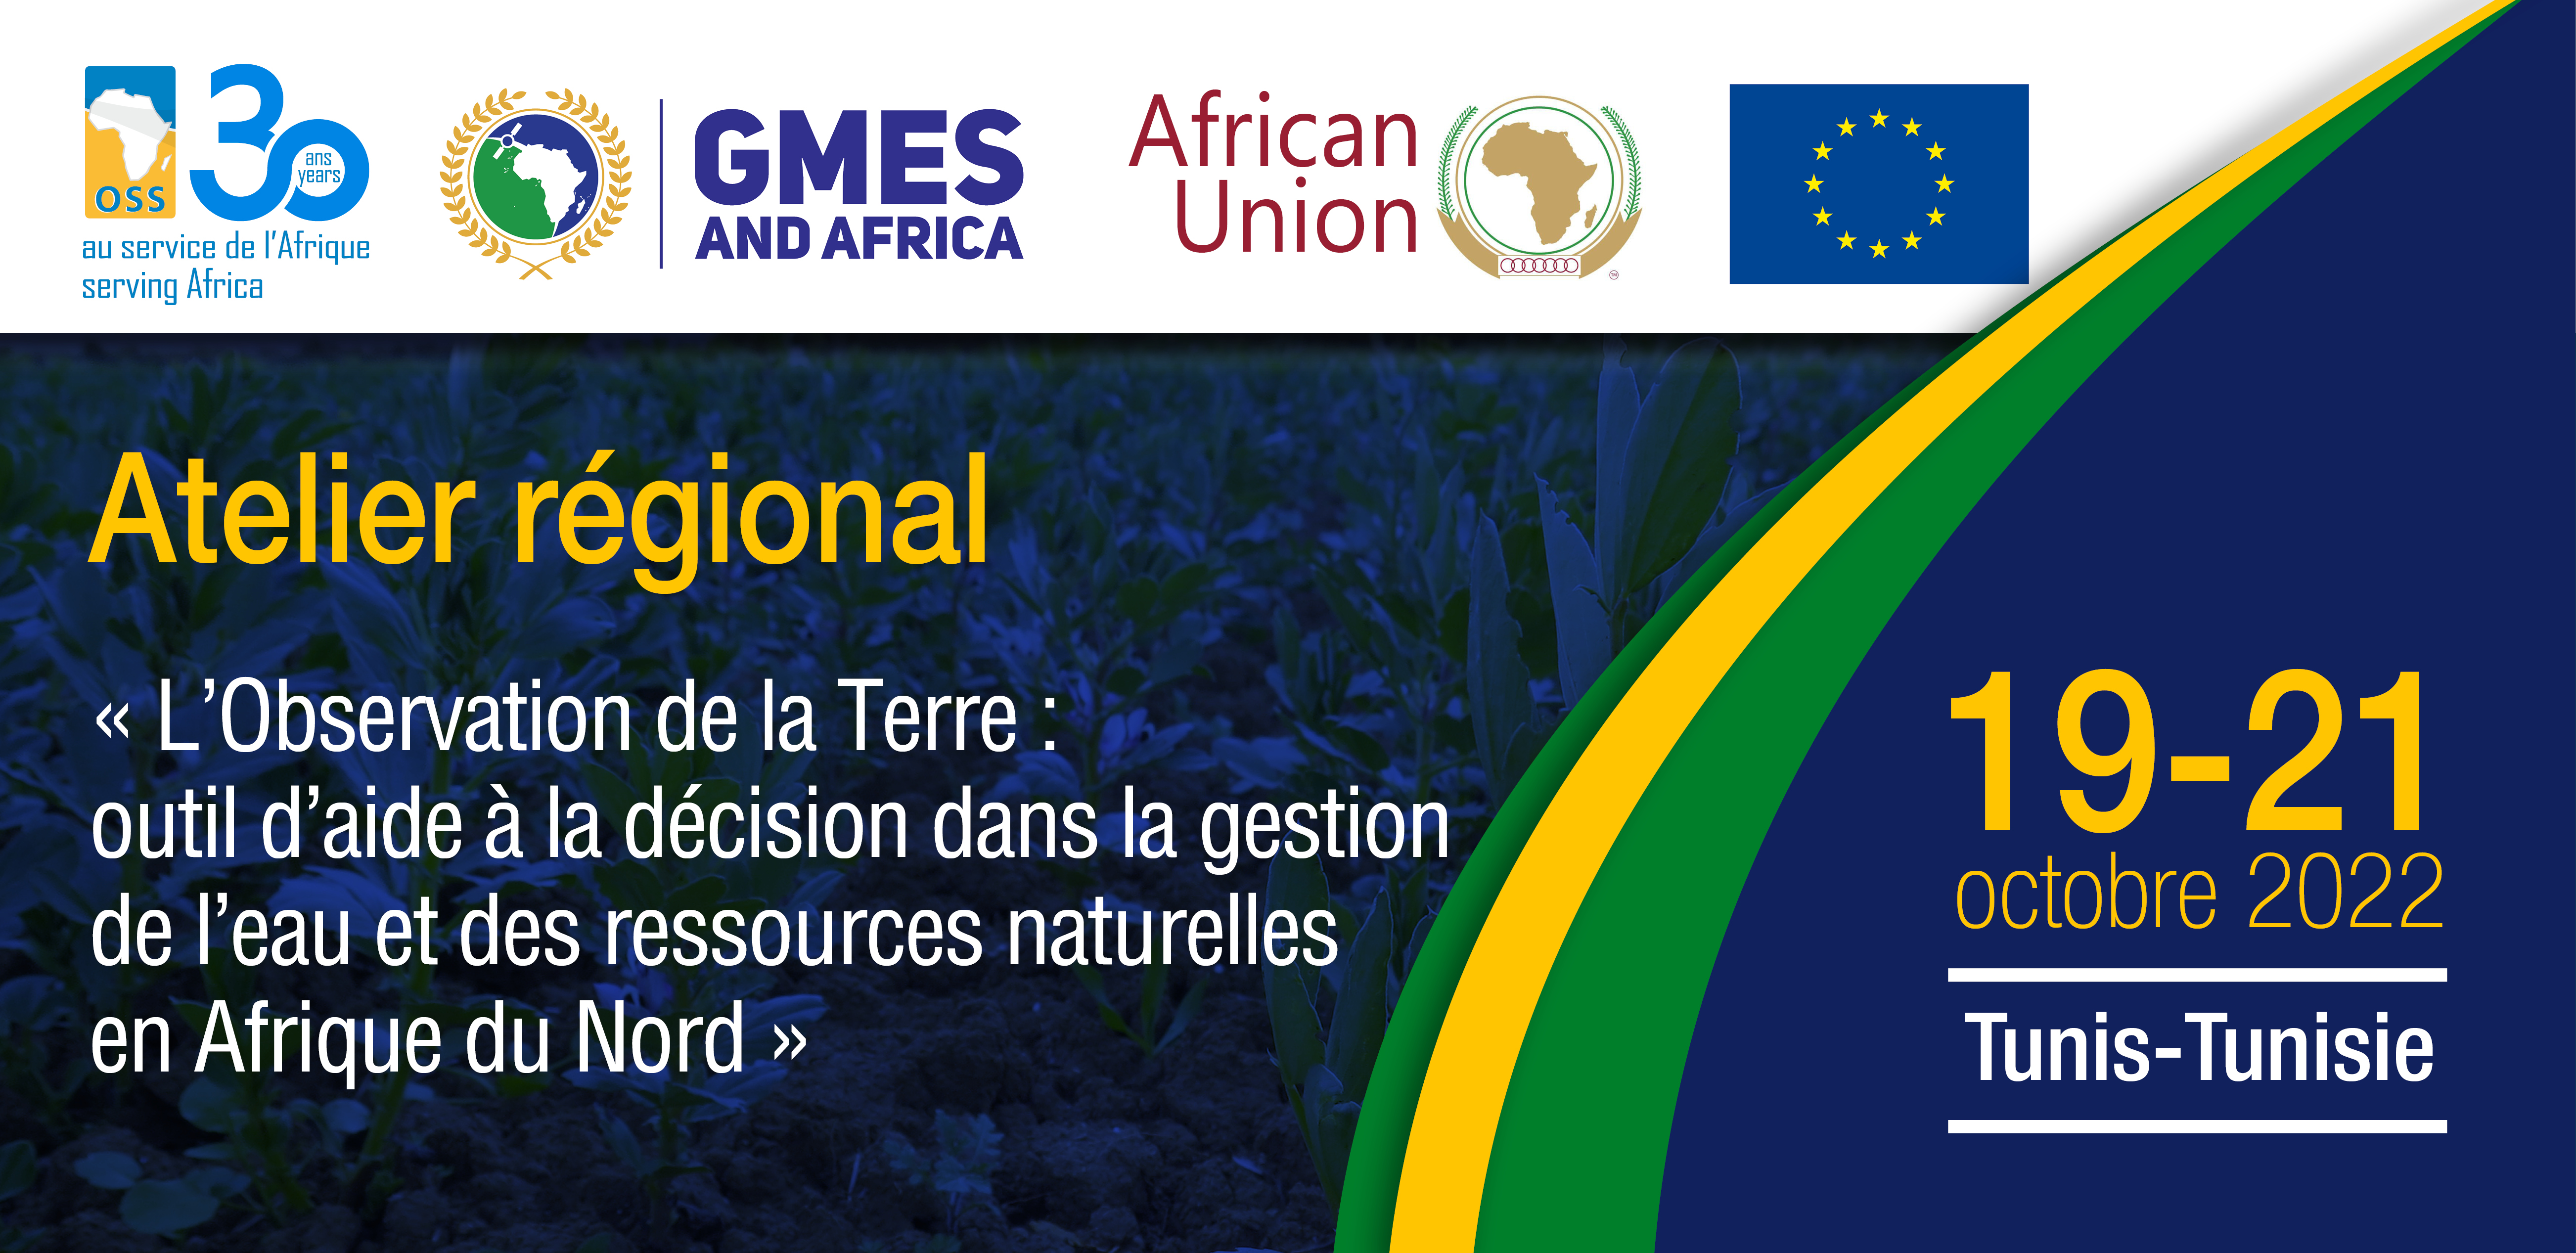  Atelier régional sur « L'Observation de la Terre : outil d’aide à la décision dans la gestion de l’eau et des ressources naturelles en Afrique du Nord » 19-21 octobre 2022,  Tunis-Tunisie